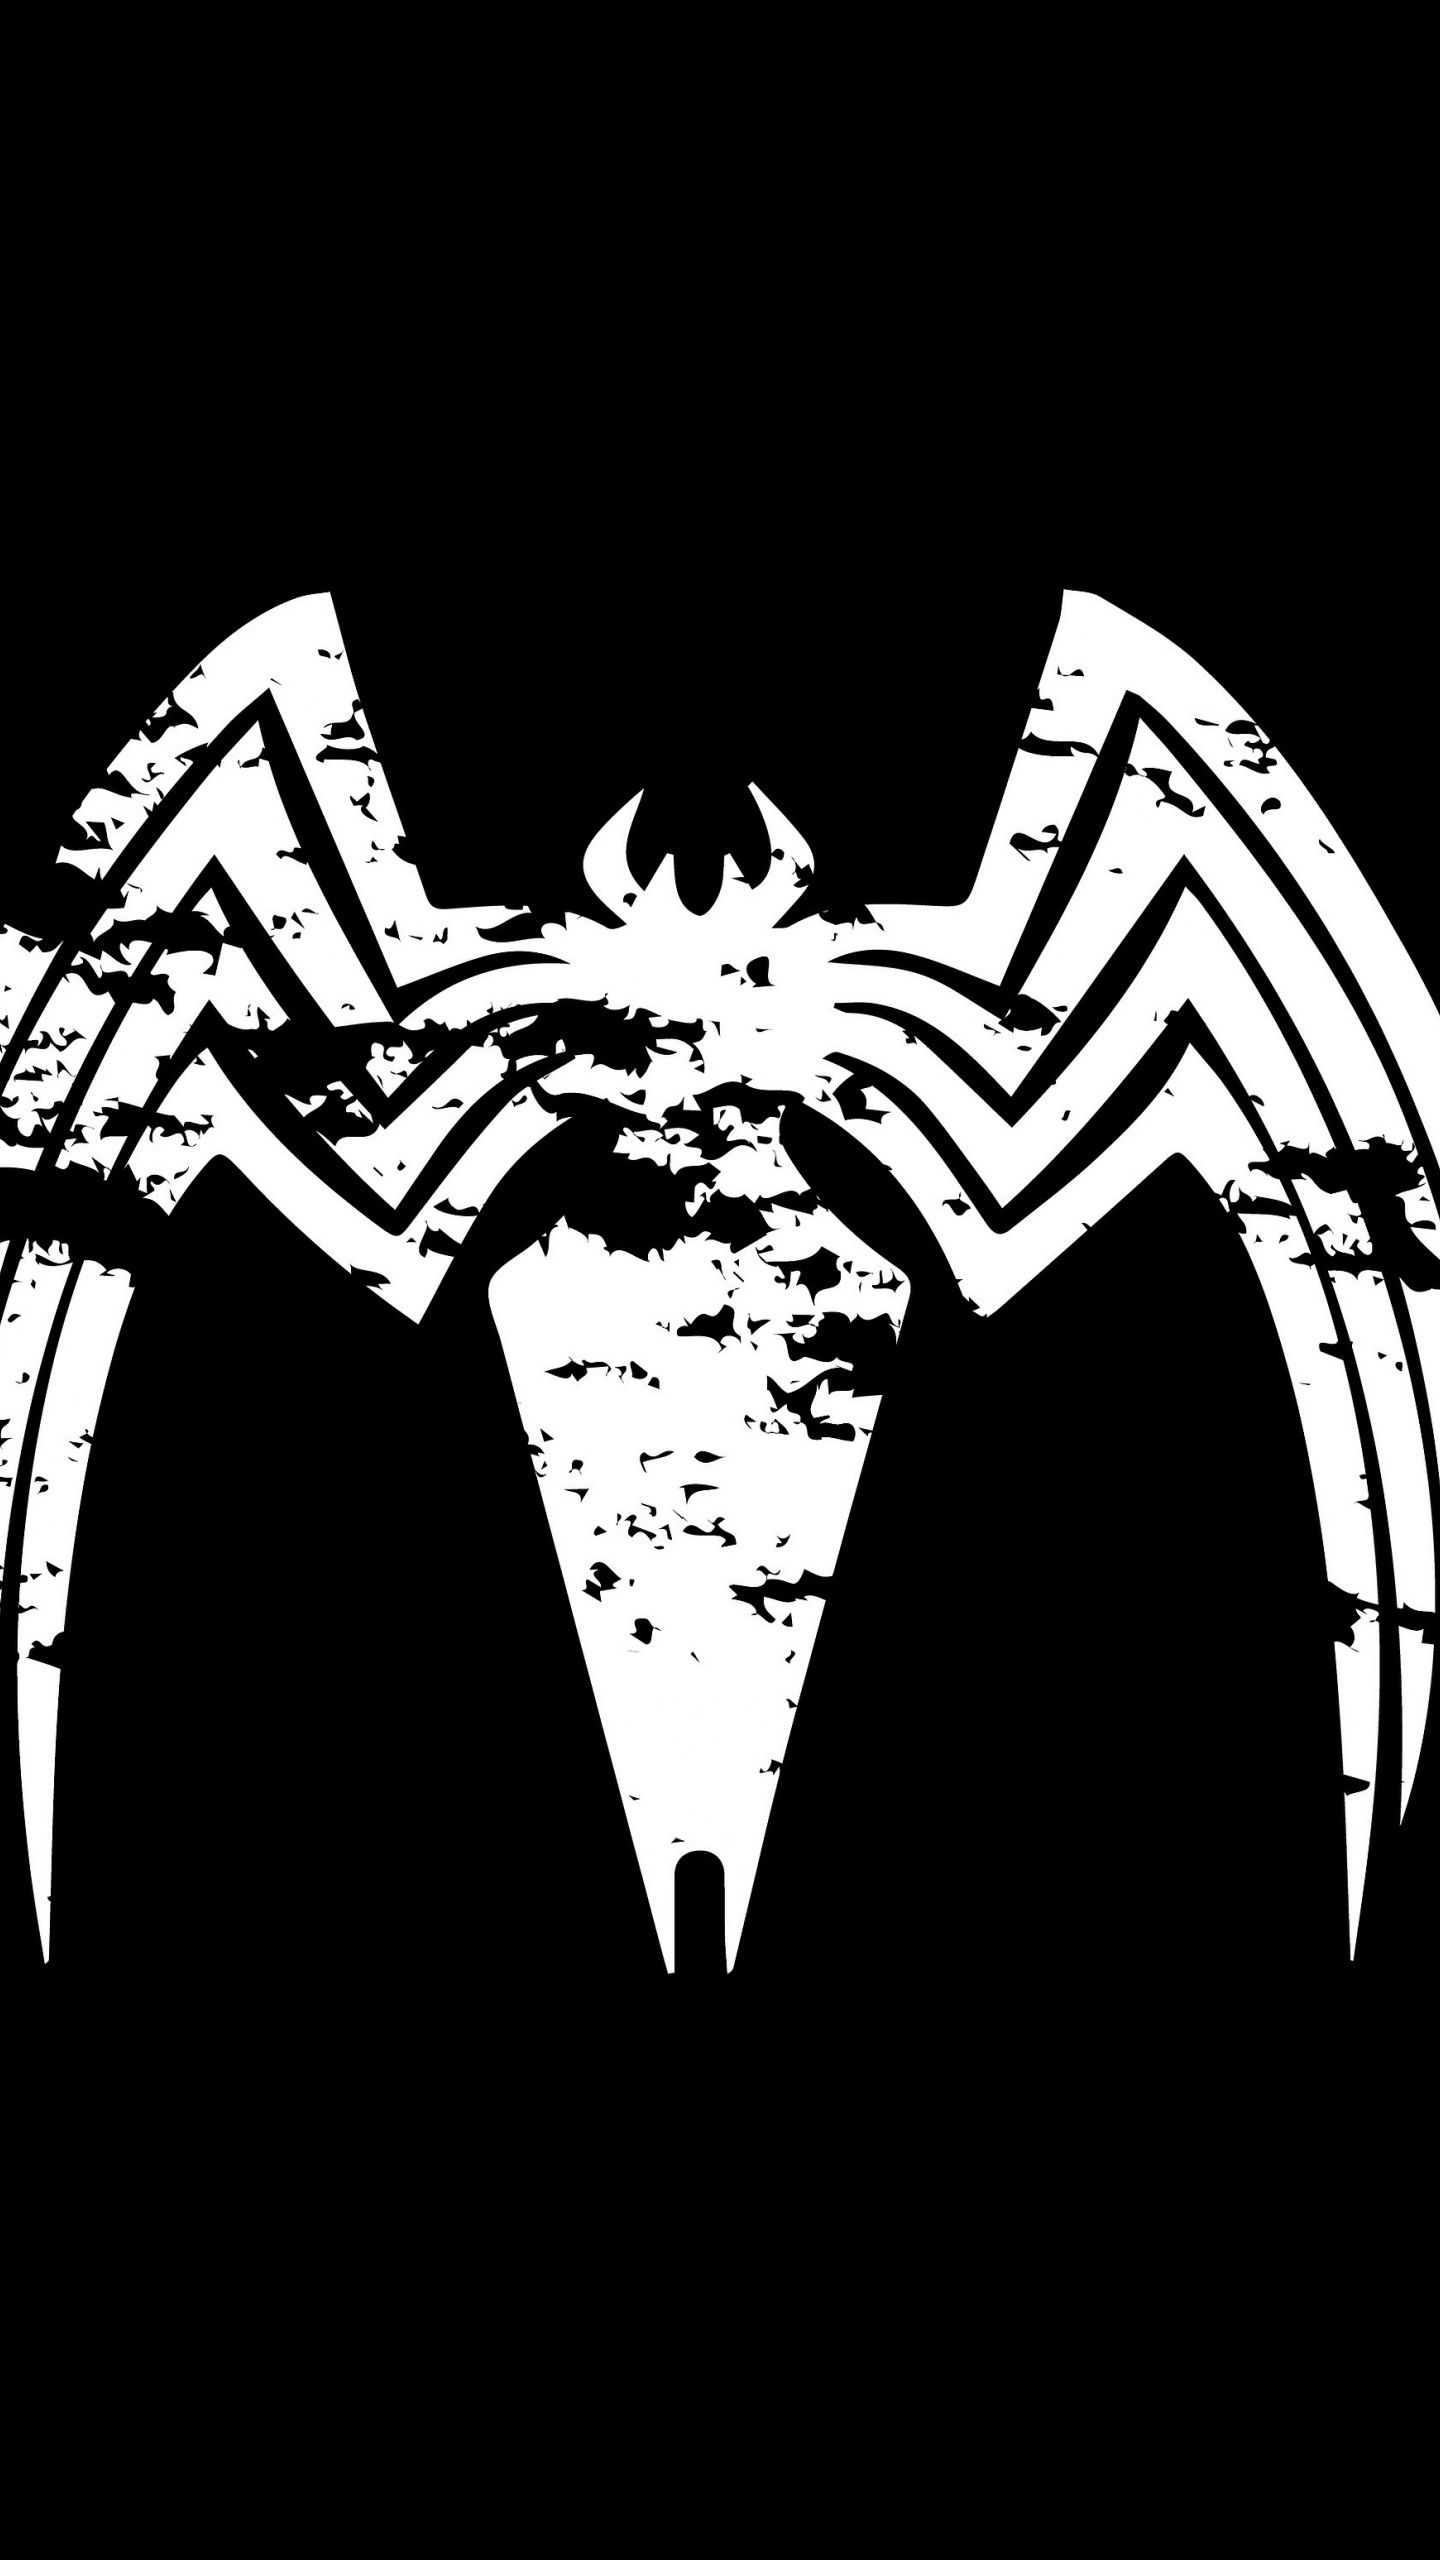 Steam Workshop::Venom Minimal 4K